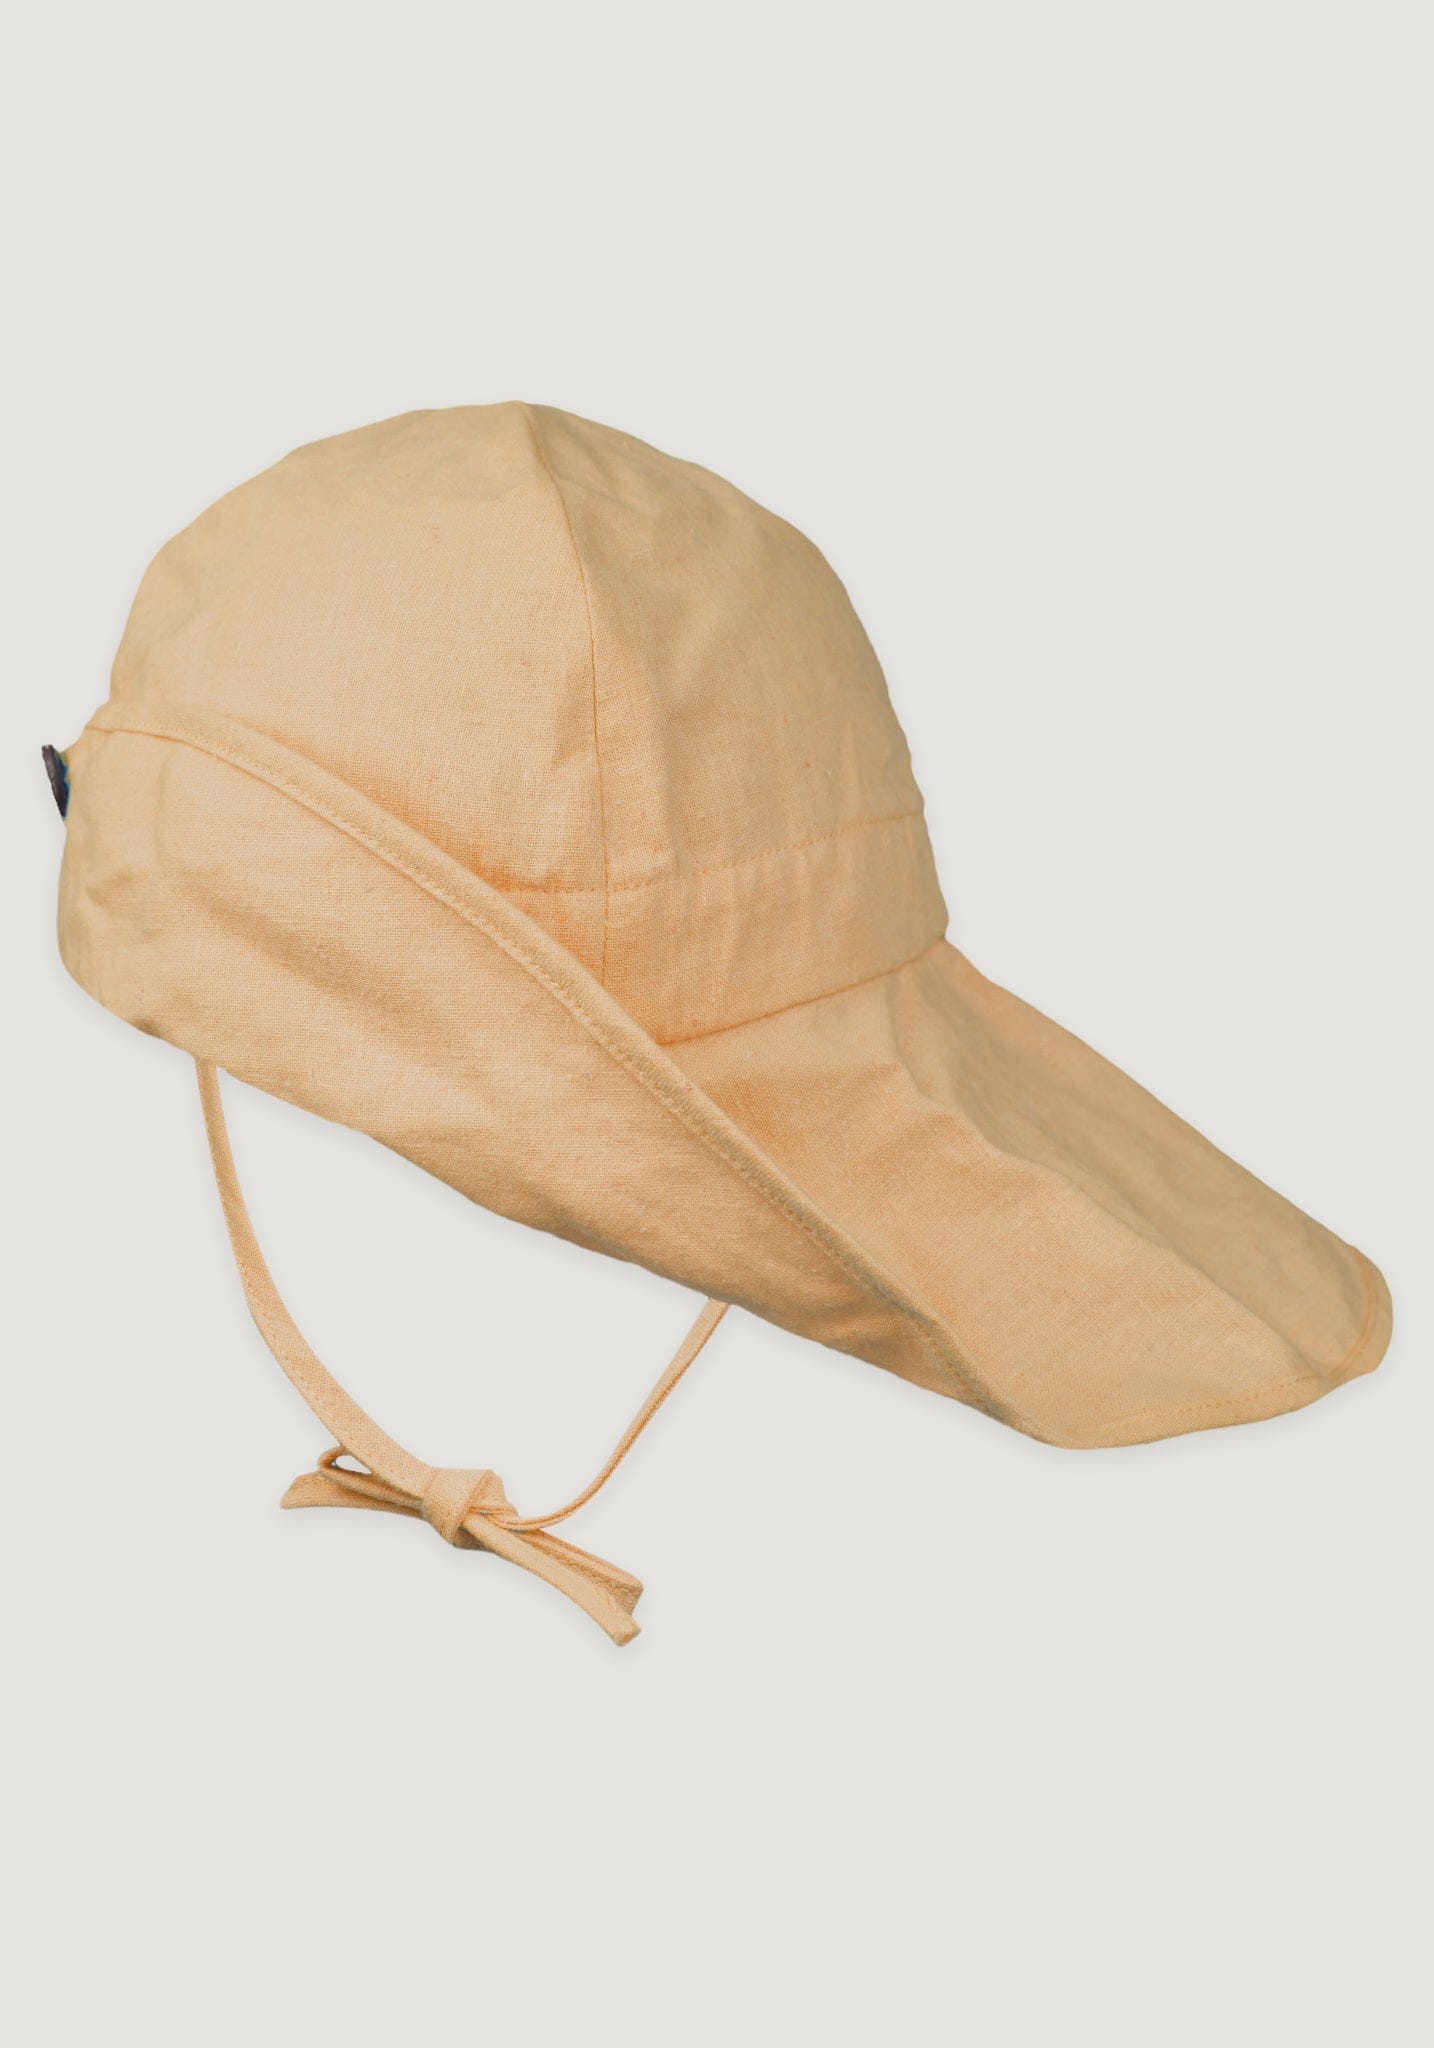 Pălărie ajustabilă Light din cânepă și bumbac - Golden Straw Manymonths HipHip.ro